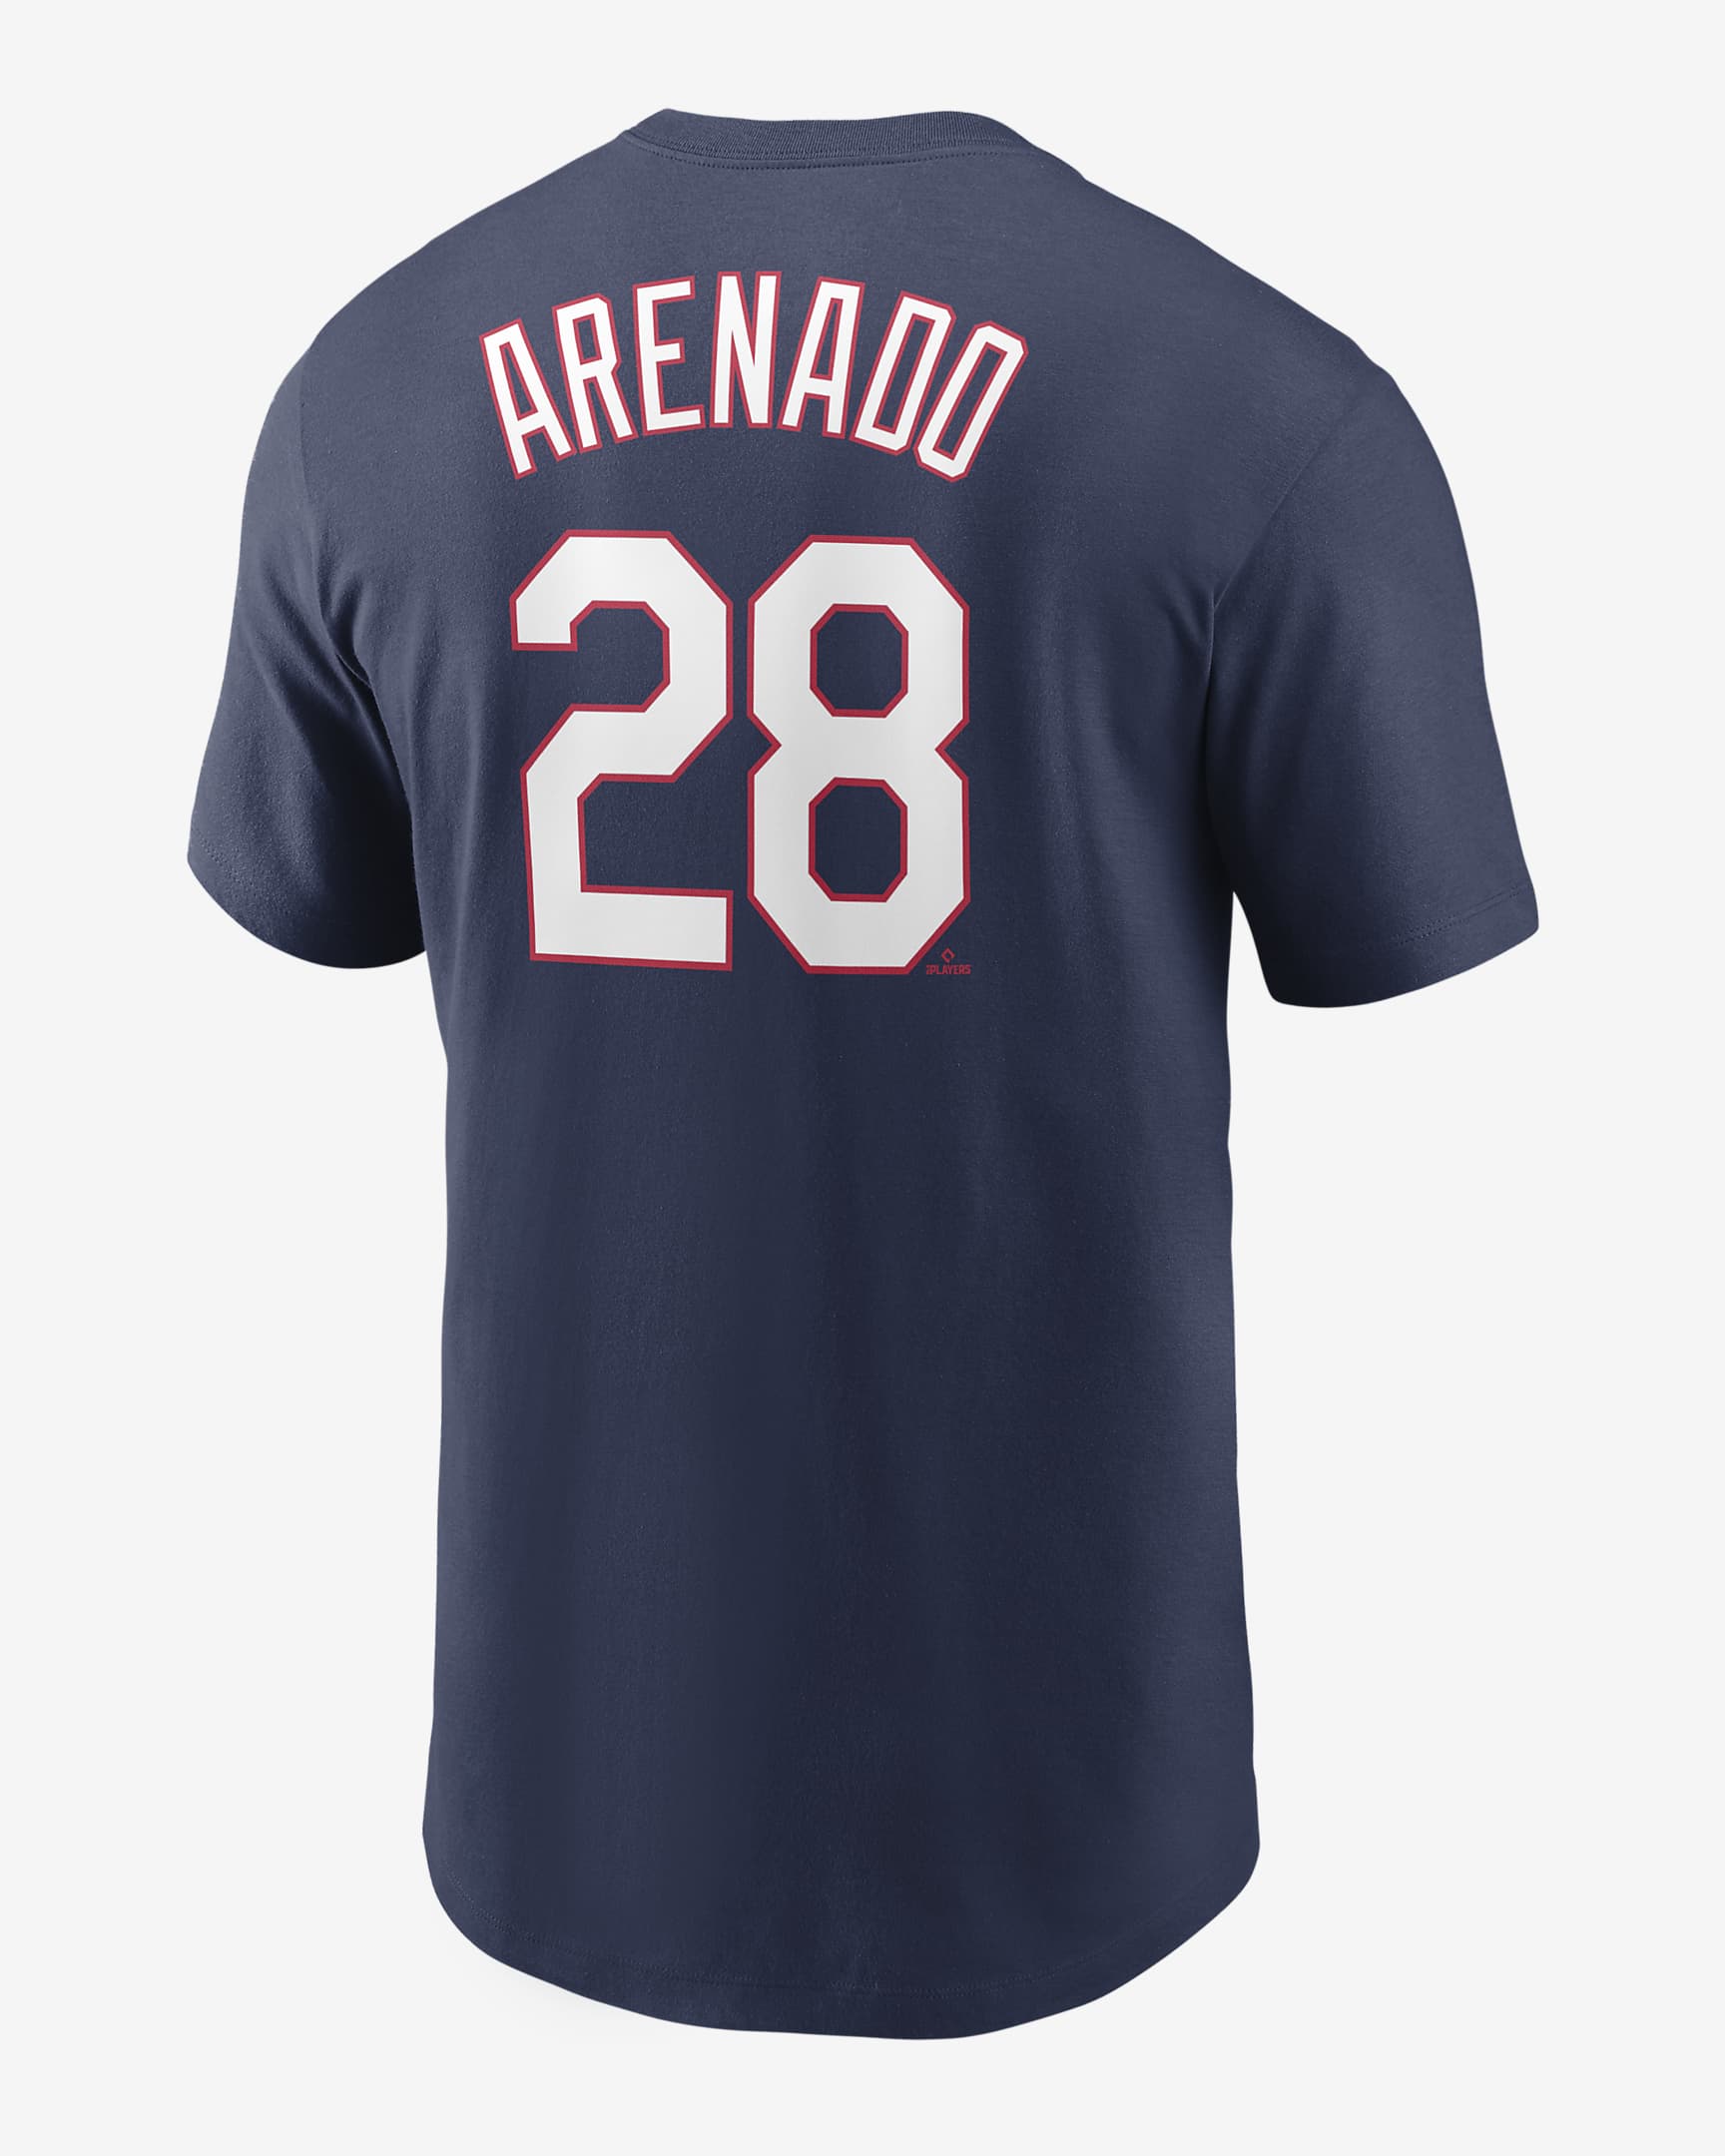 MLB St. Louis Cardinals (Nolan Arenado) Men's T-Shirt. Nike.com